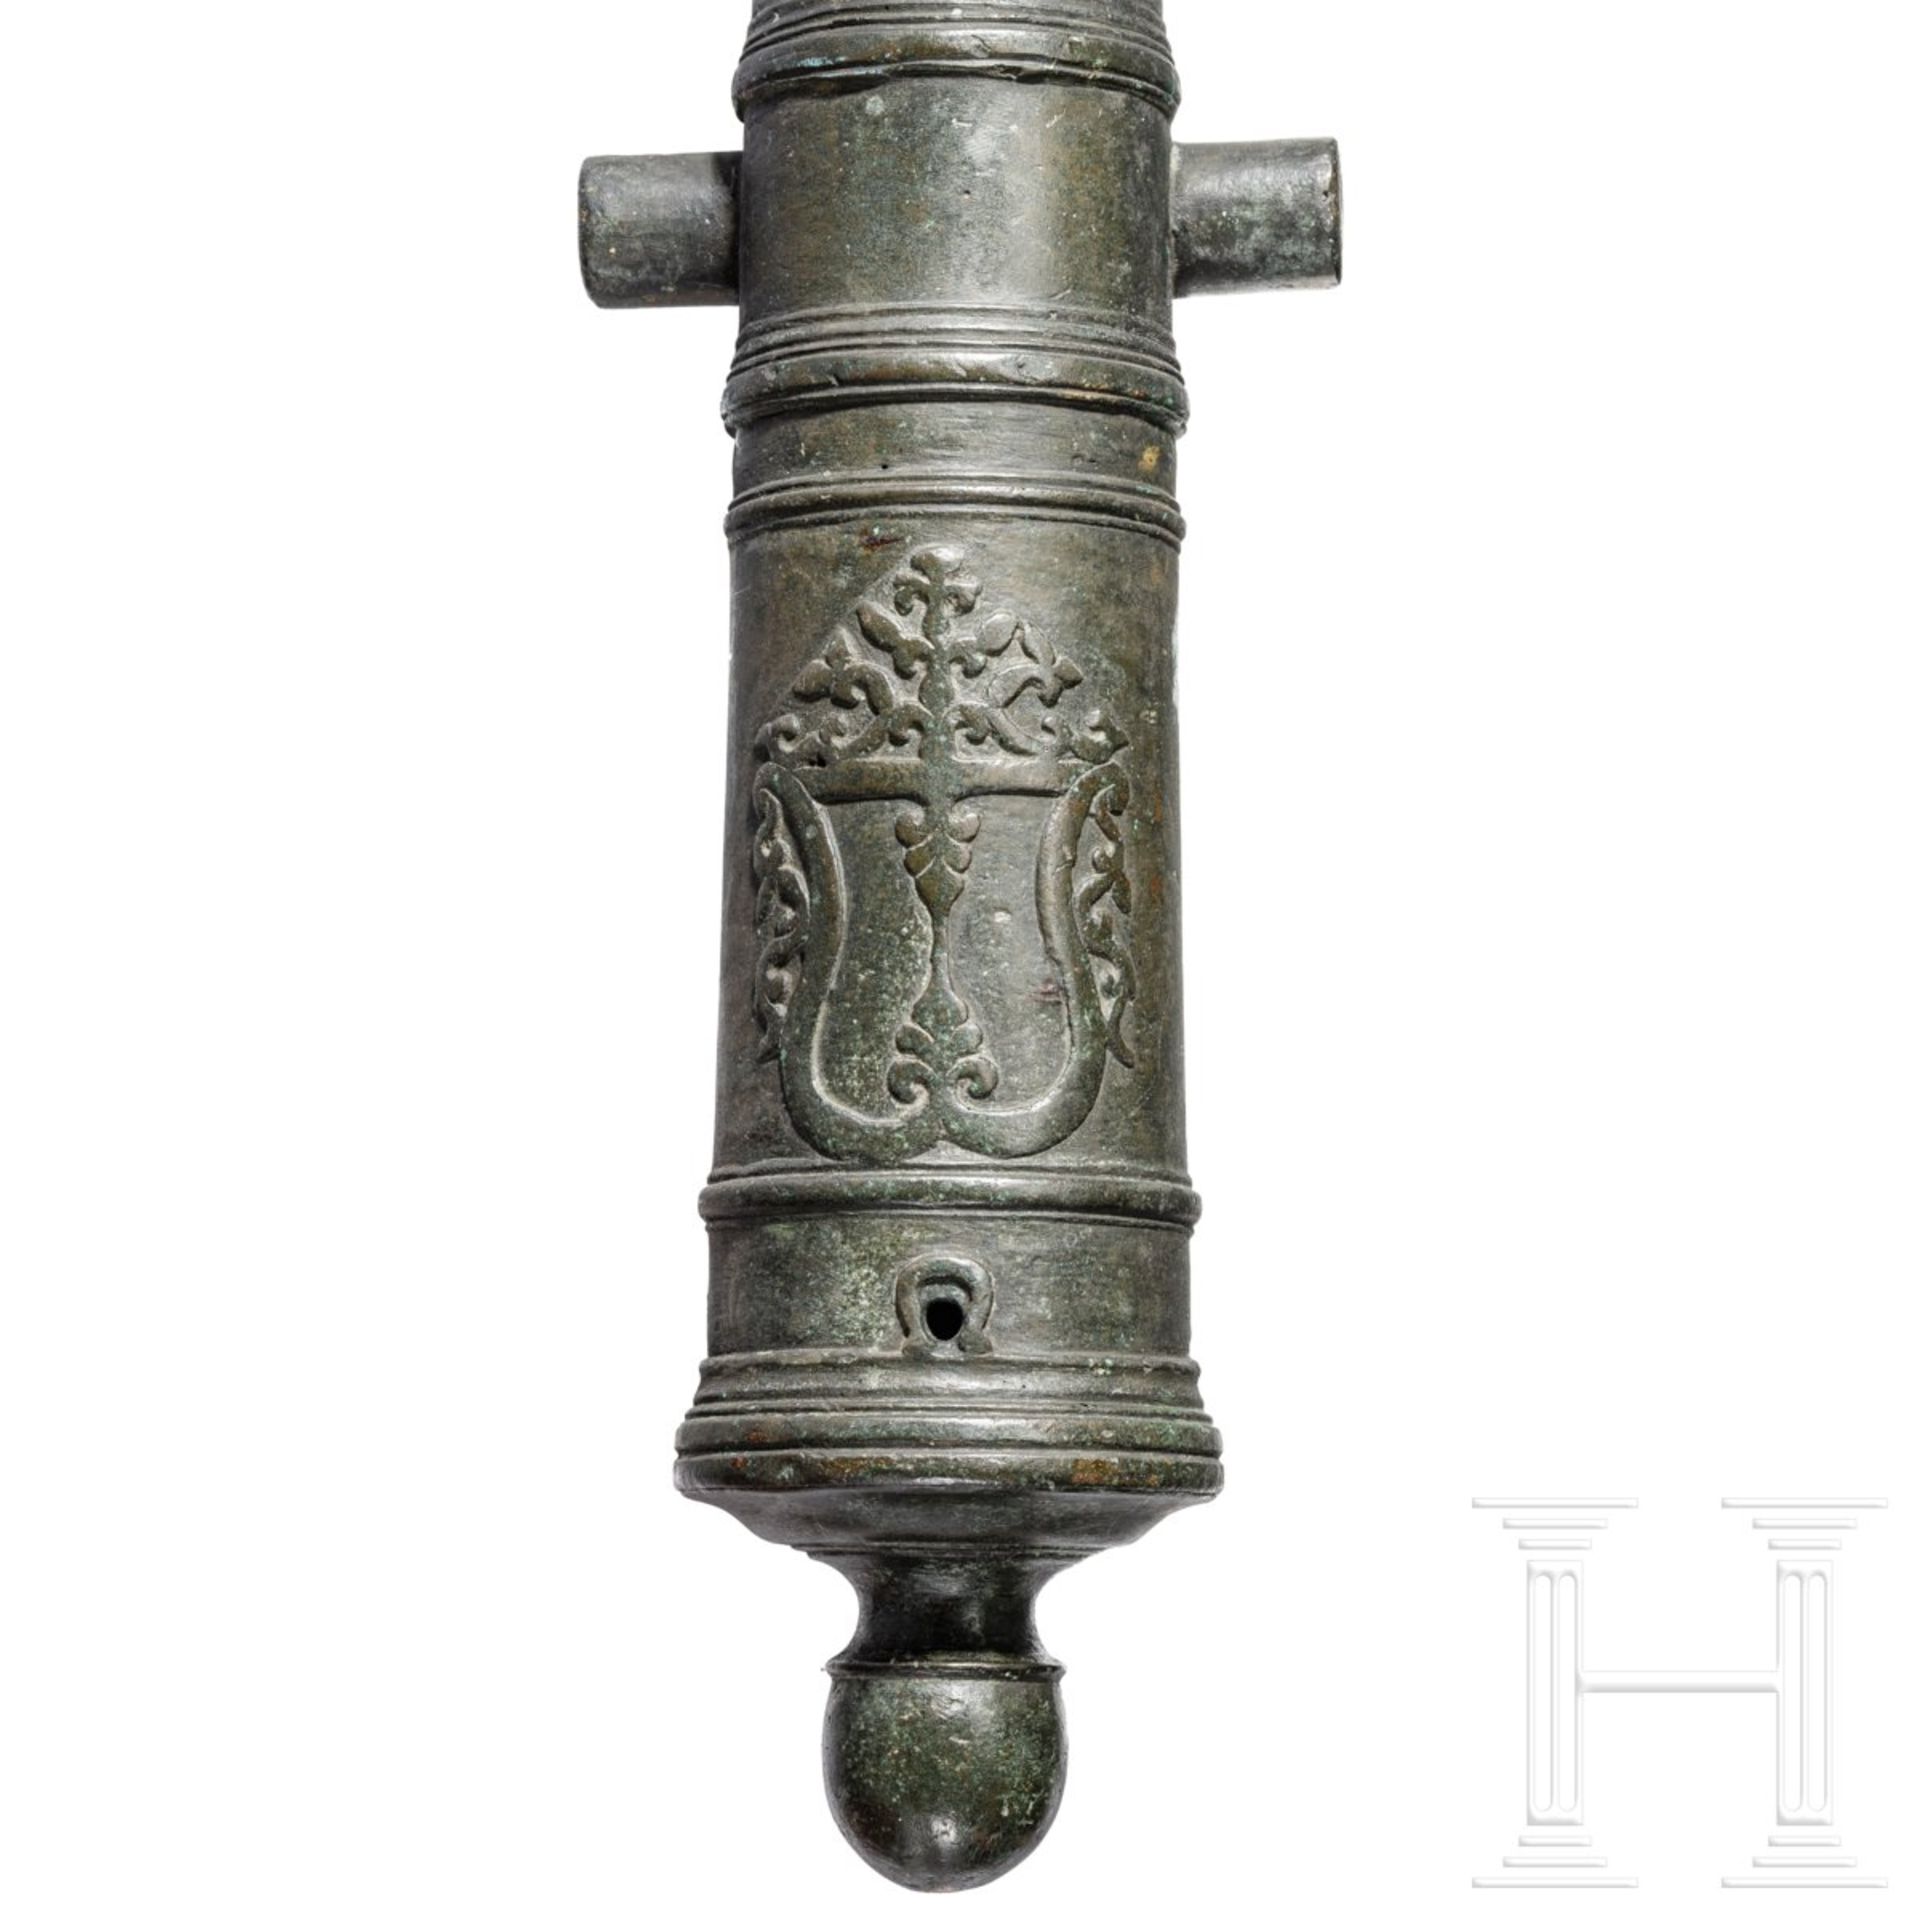 Kleine Bordkanone aus Bronze, niederländisch kolonial, 1. Hälfte 18. Jhdt.  - Bild 4 aus 5